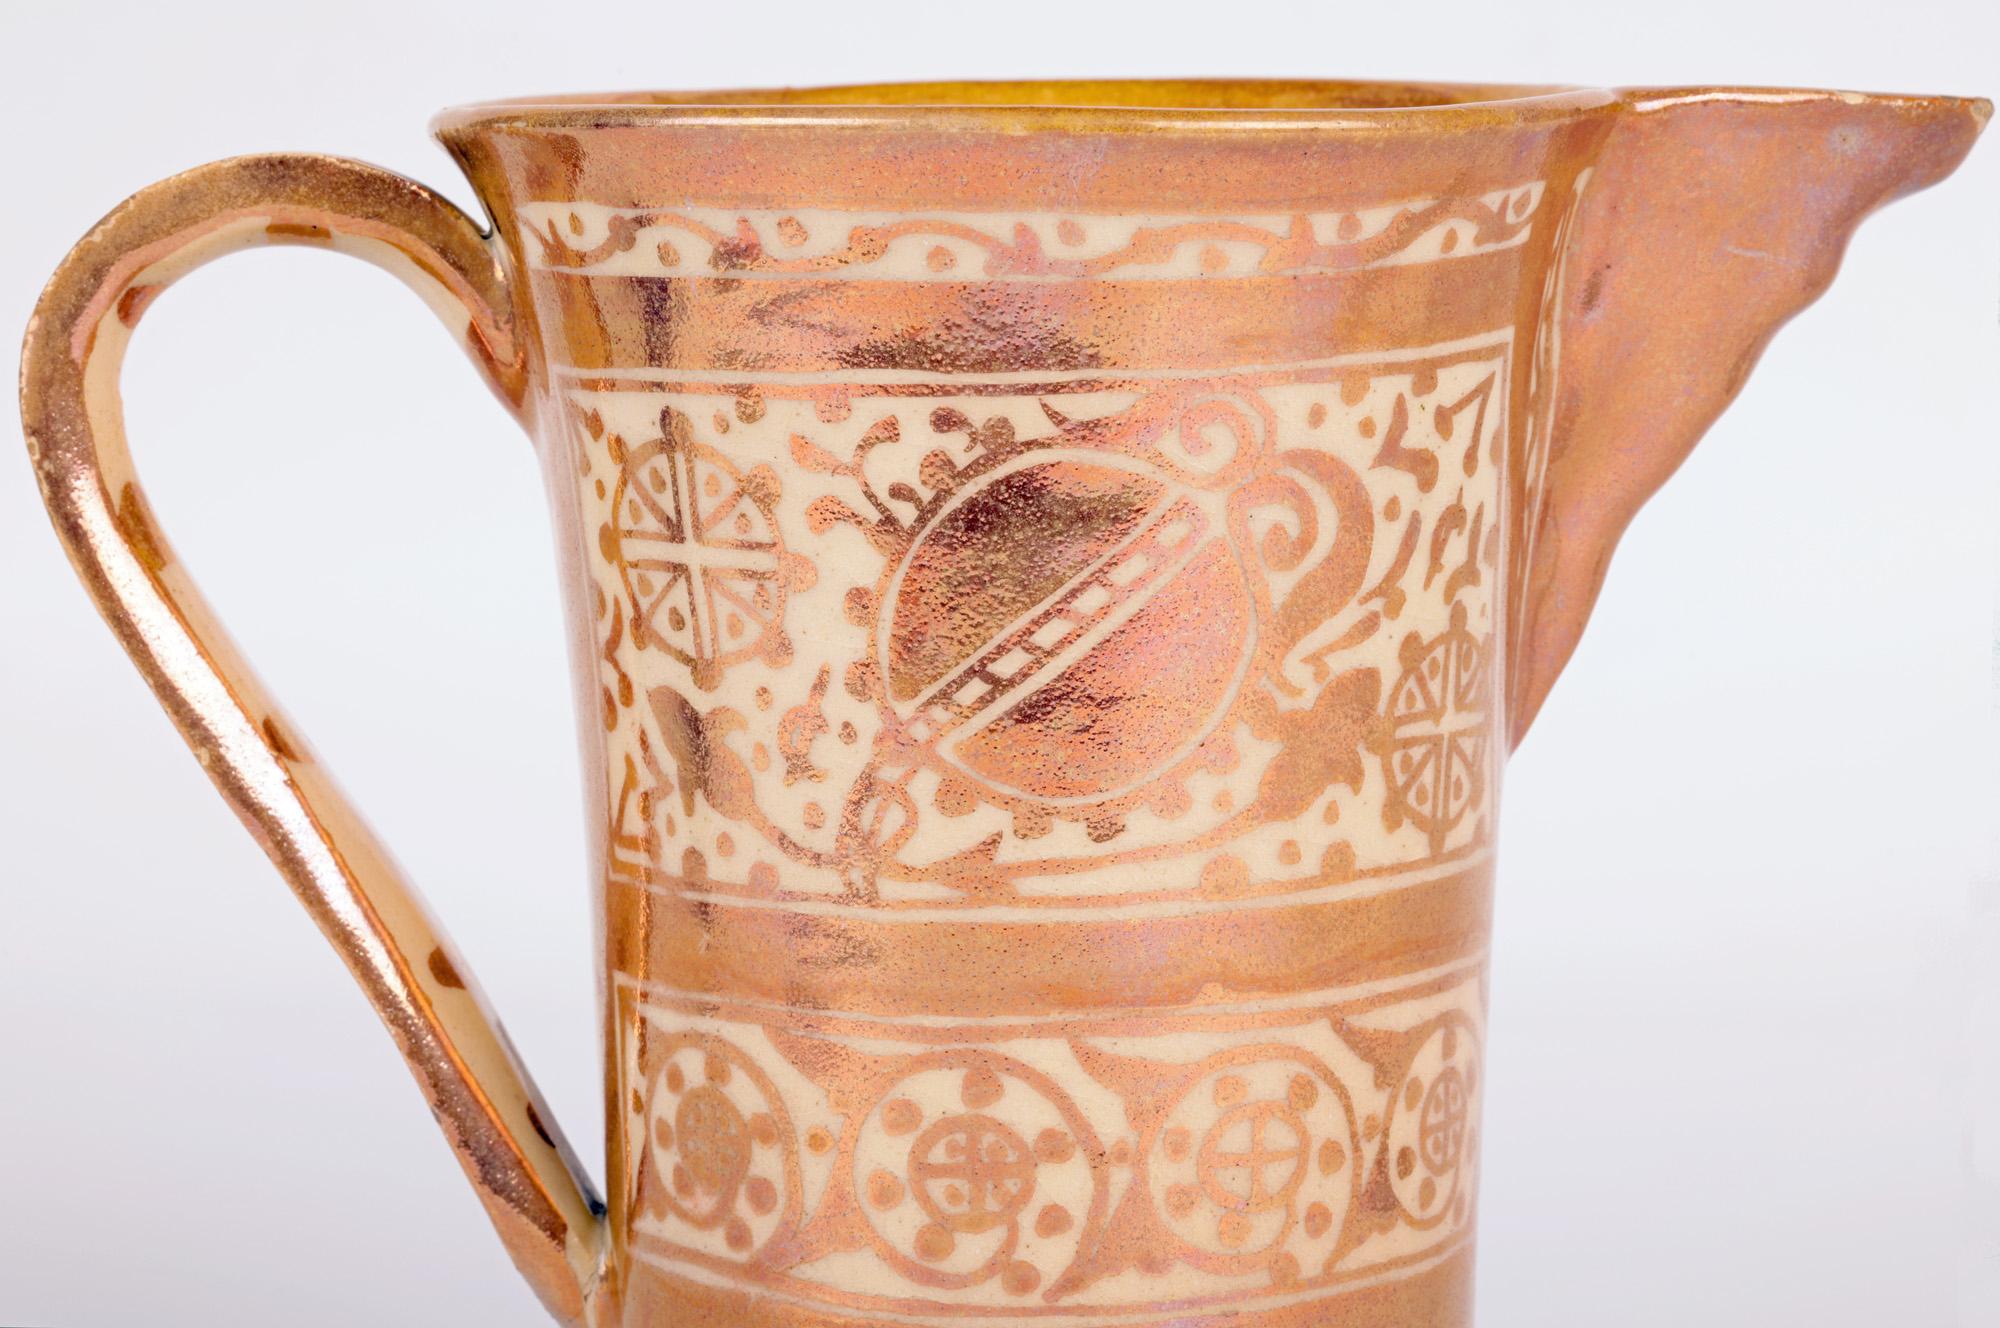 Une très élégante cruche en poterie d'art hispano-mauresque ou d'influence mauresque à glaçure cuivreuse datant du 19e siècle. 

Le style hispano-mauresque, comme son nom l'indique, est né dans le sud de l'Espagne, sous l'occupation des Maures. Les